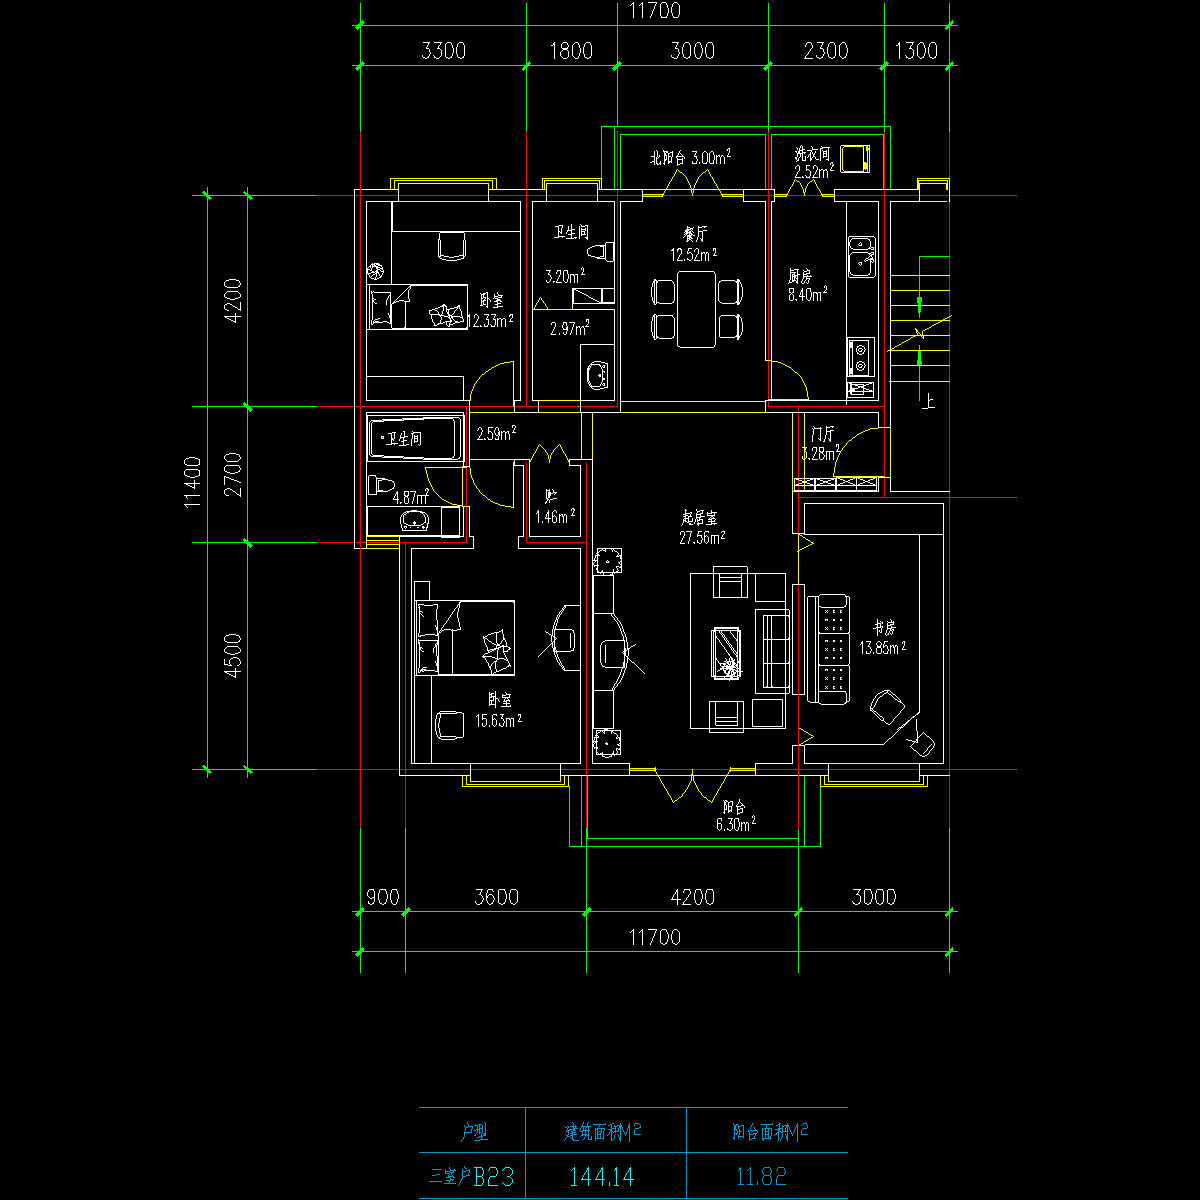 板式多层一梯两户三室一厅二卫户型CAD图纸(144.1/144.1)